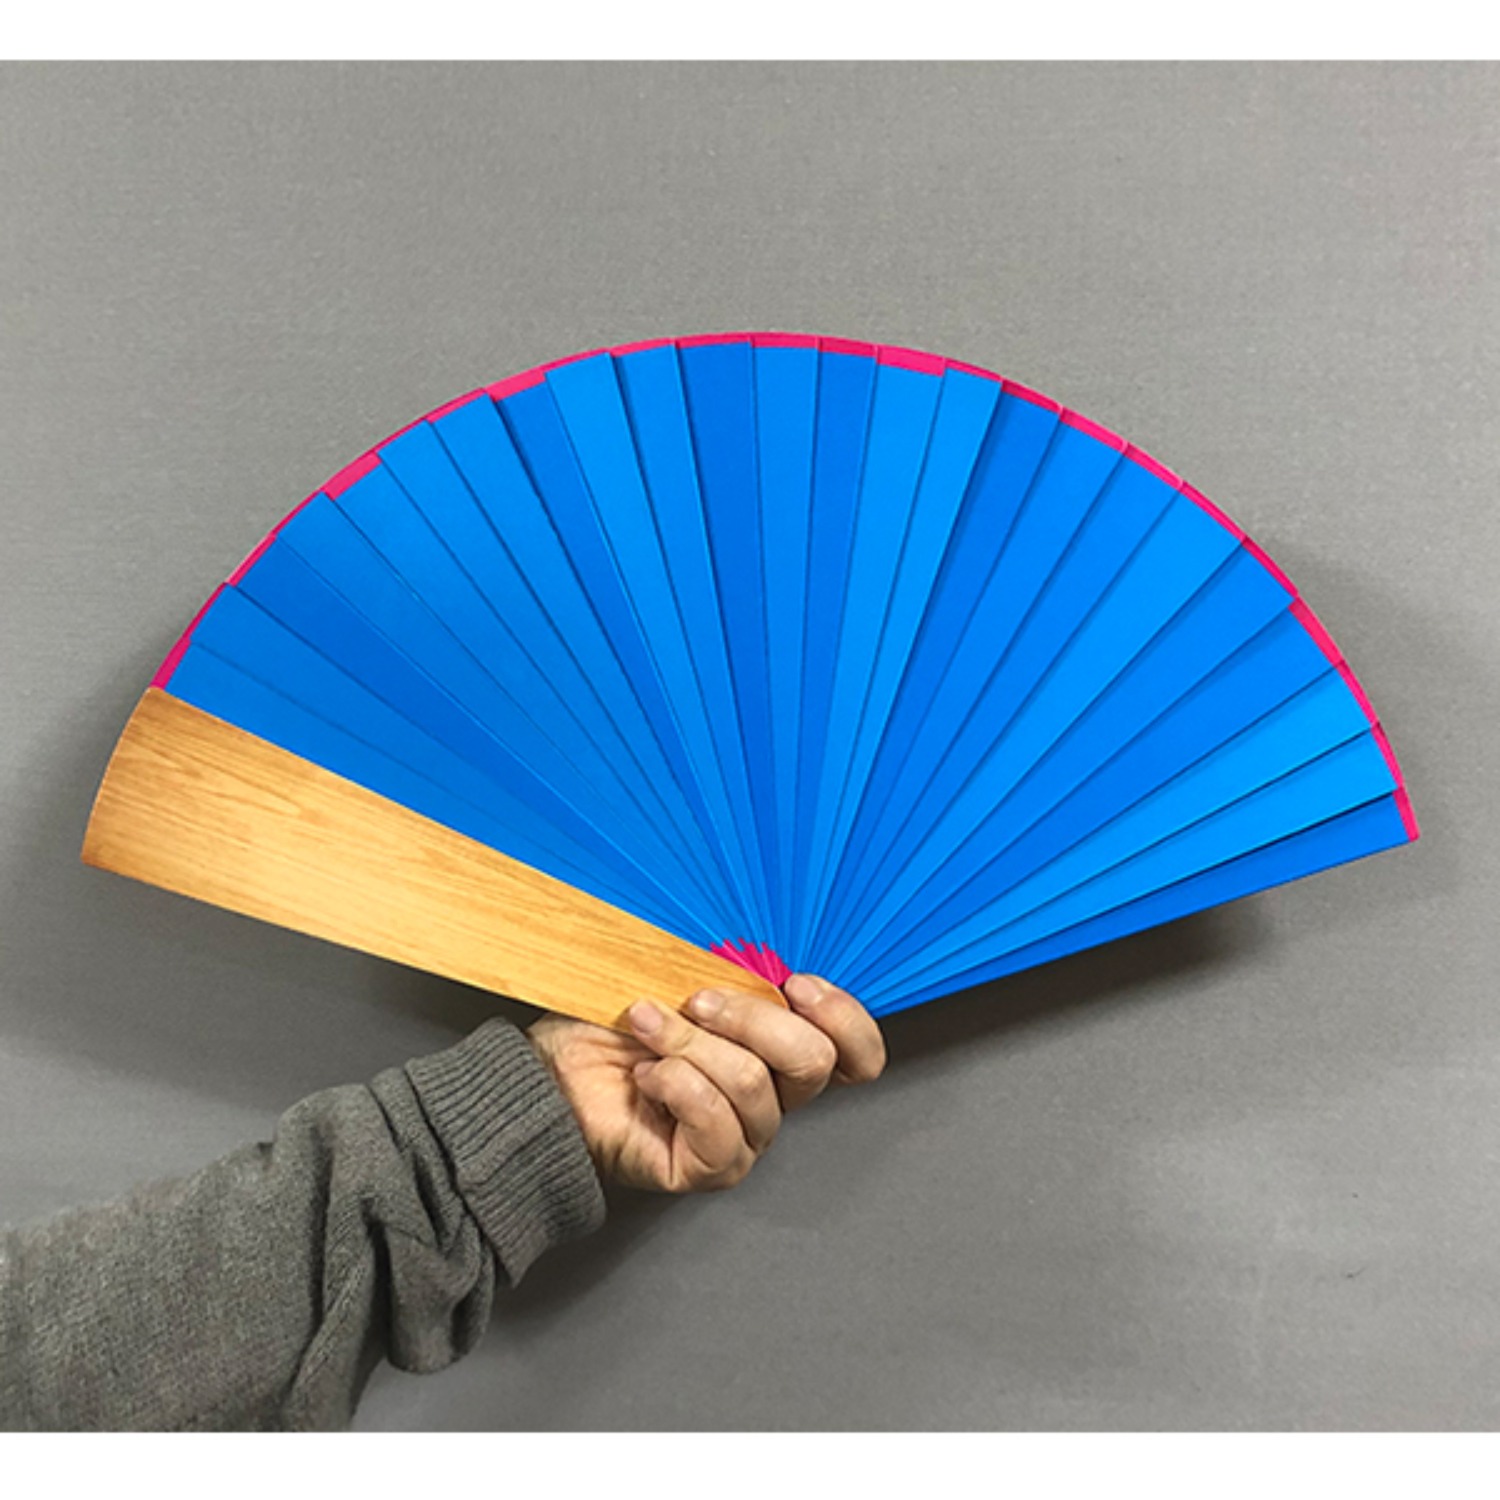 [컬러체인지부채]Four Color Changing fan 4가지 컬러로 체인지되는 부채입니다.